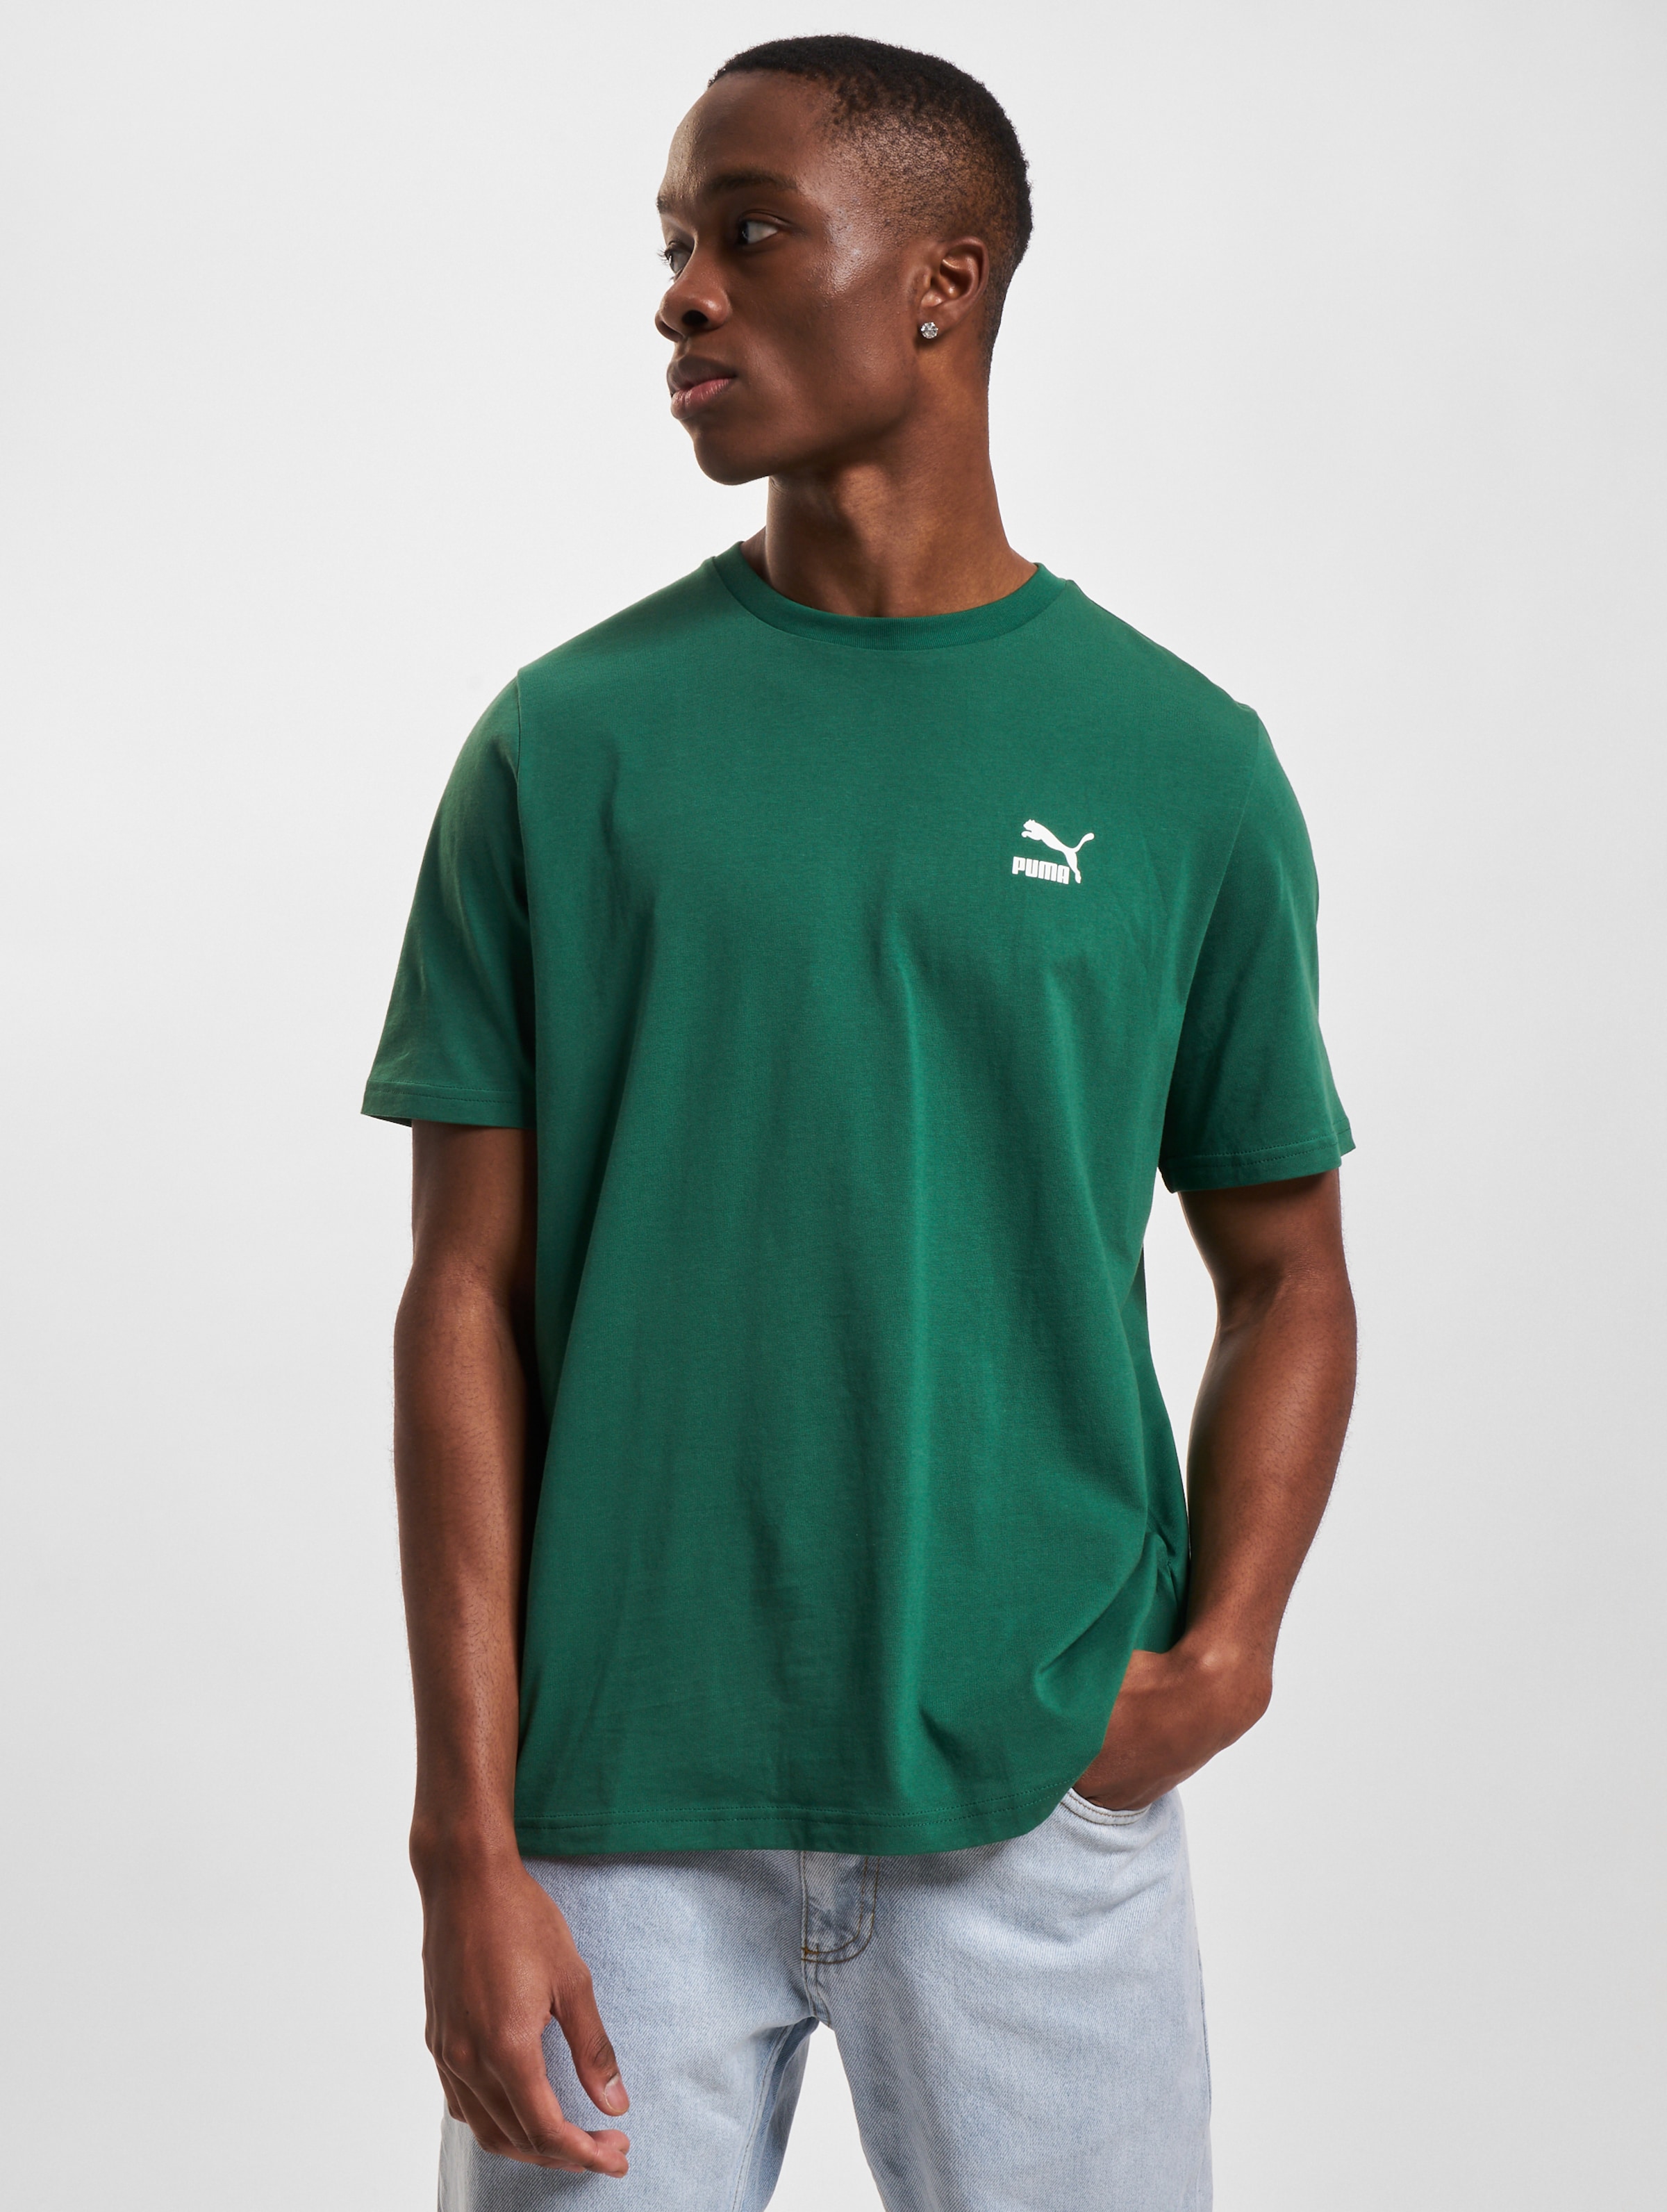 Puma T-Shirt Mannen op kleur groen, Maat M